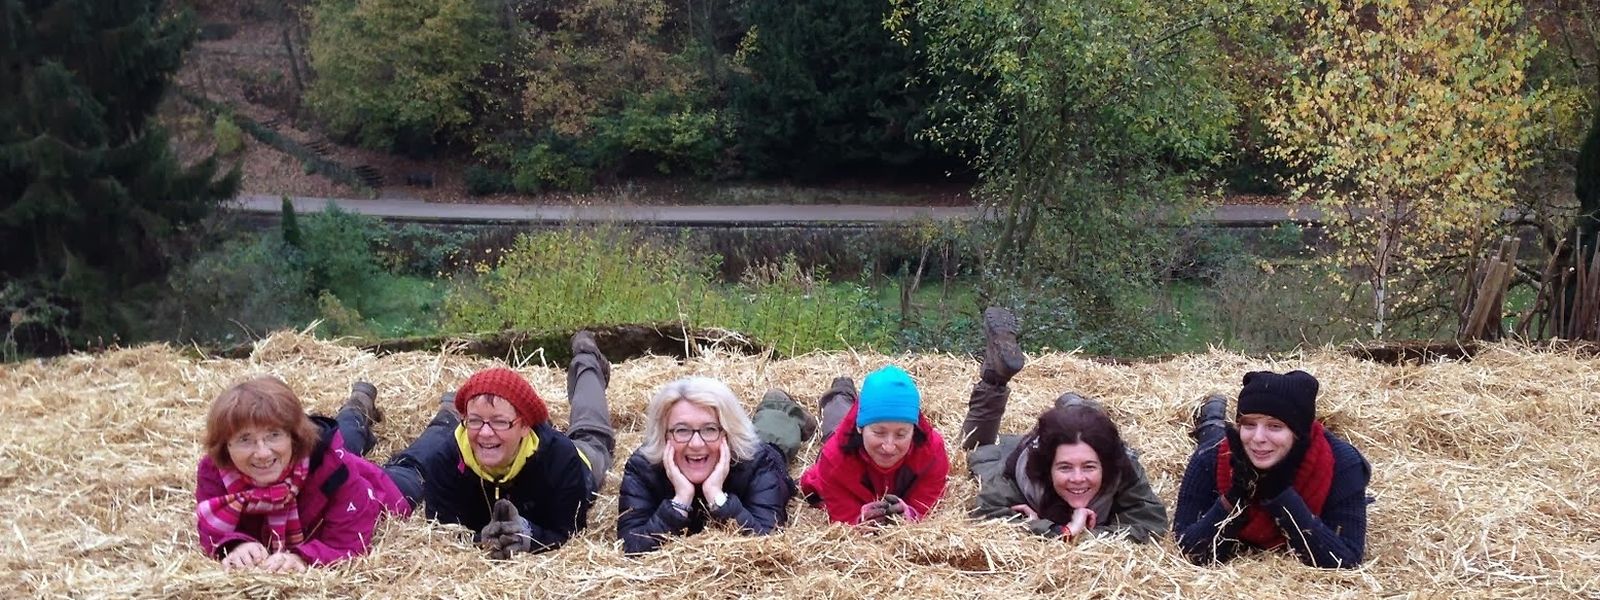 Le bonheur est dans la paille, pour ces heureux participants d'un jardin communautaire du Luxembourg.